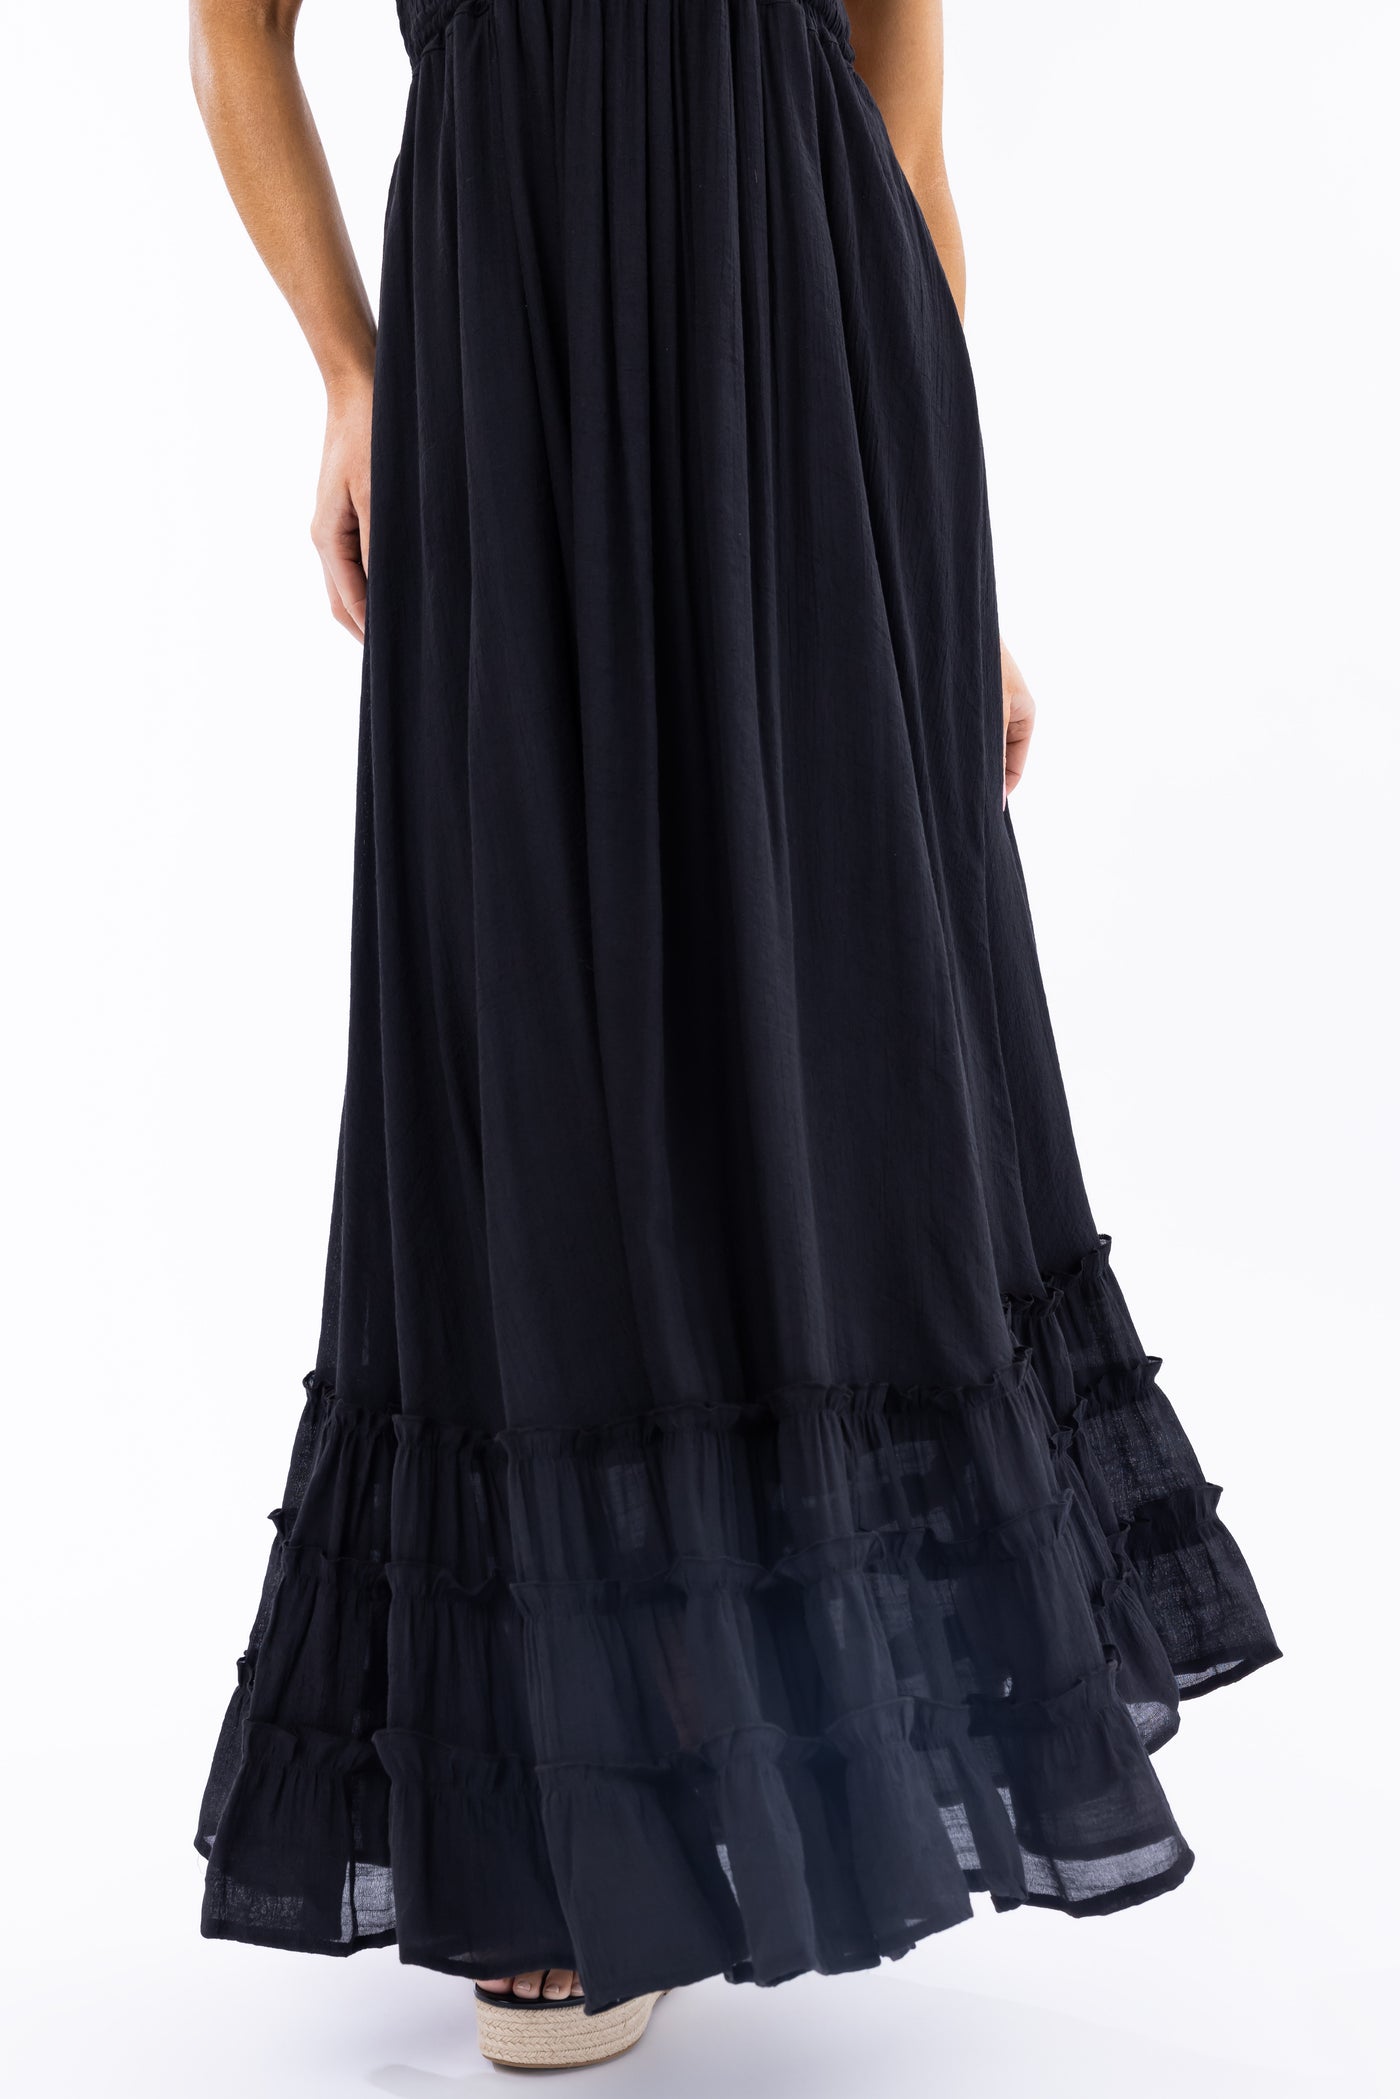 Black Ruffle Bottom Sleeveless Maxi Dress